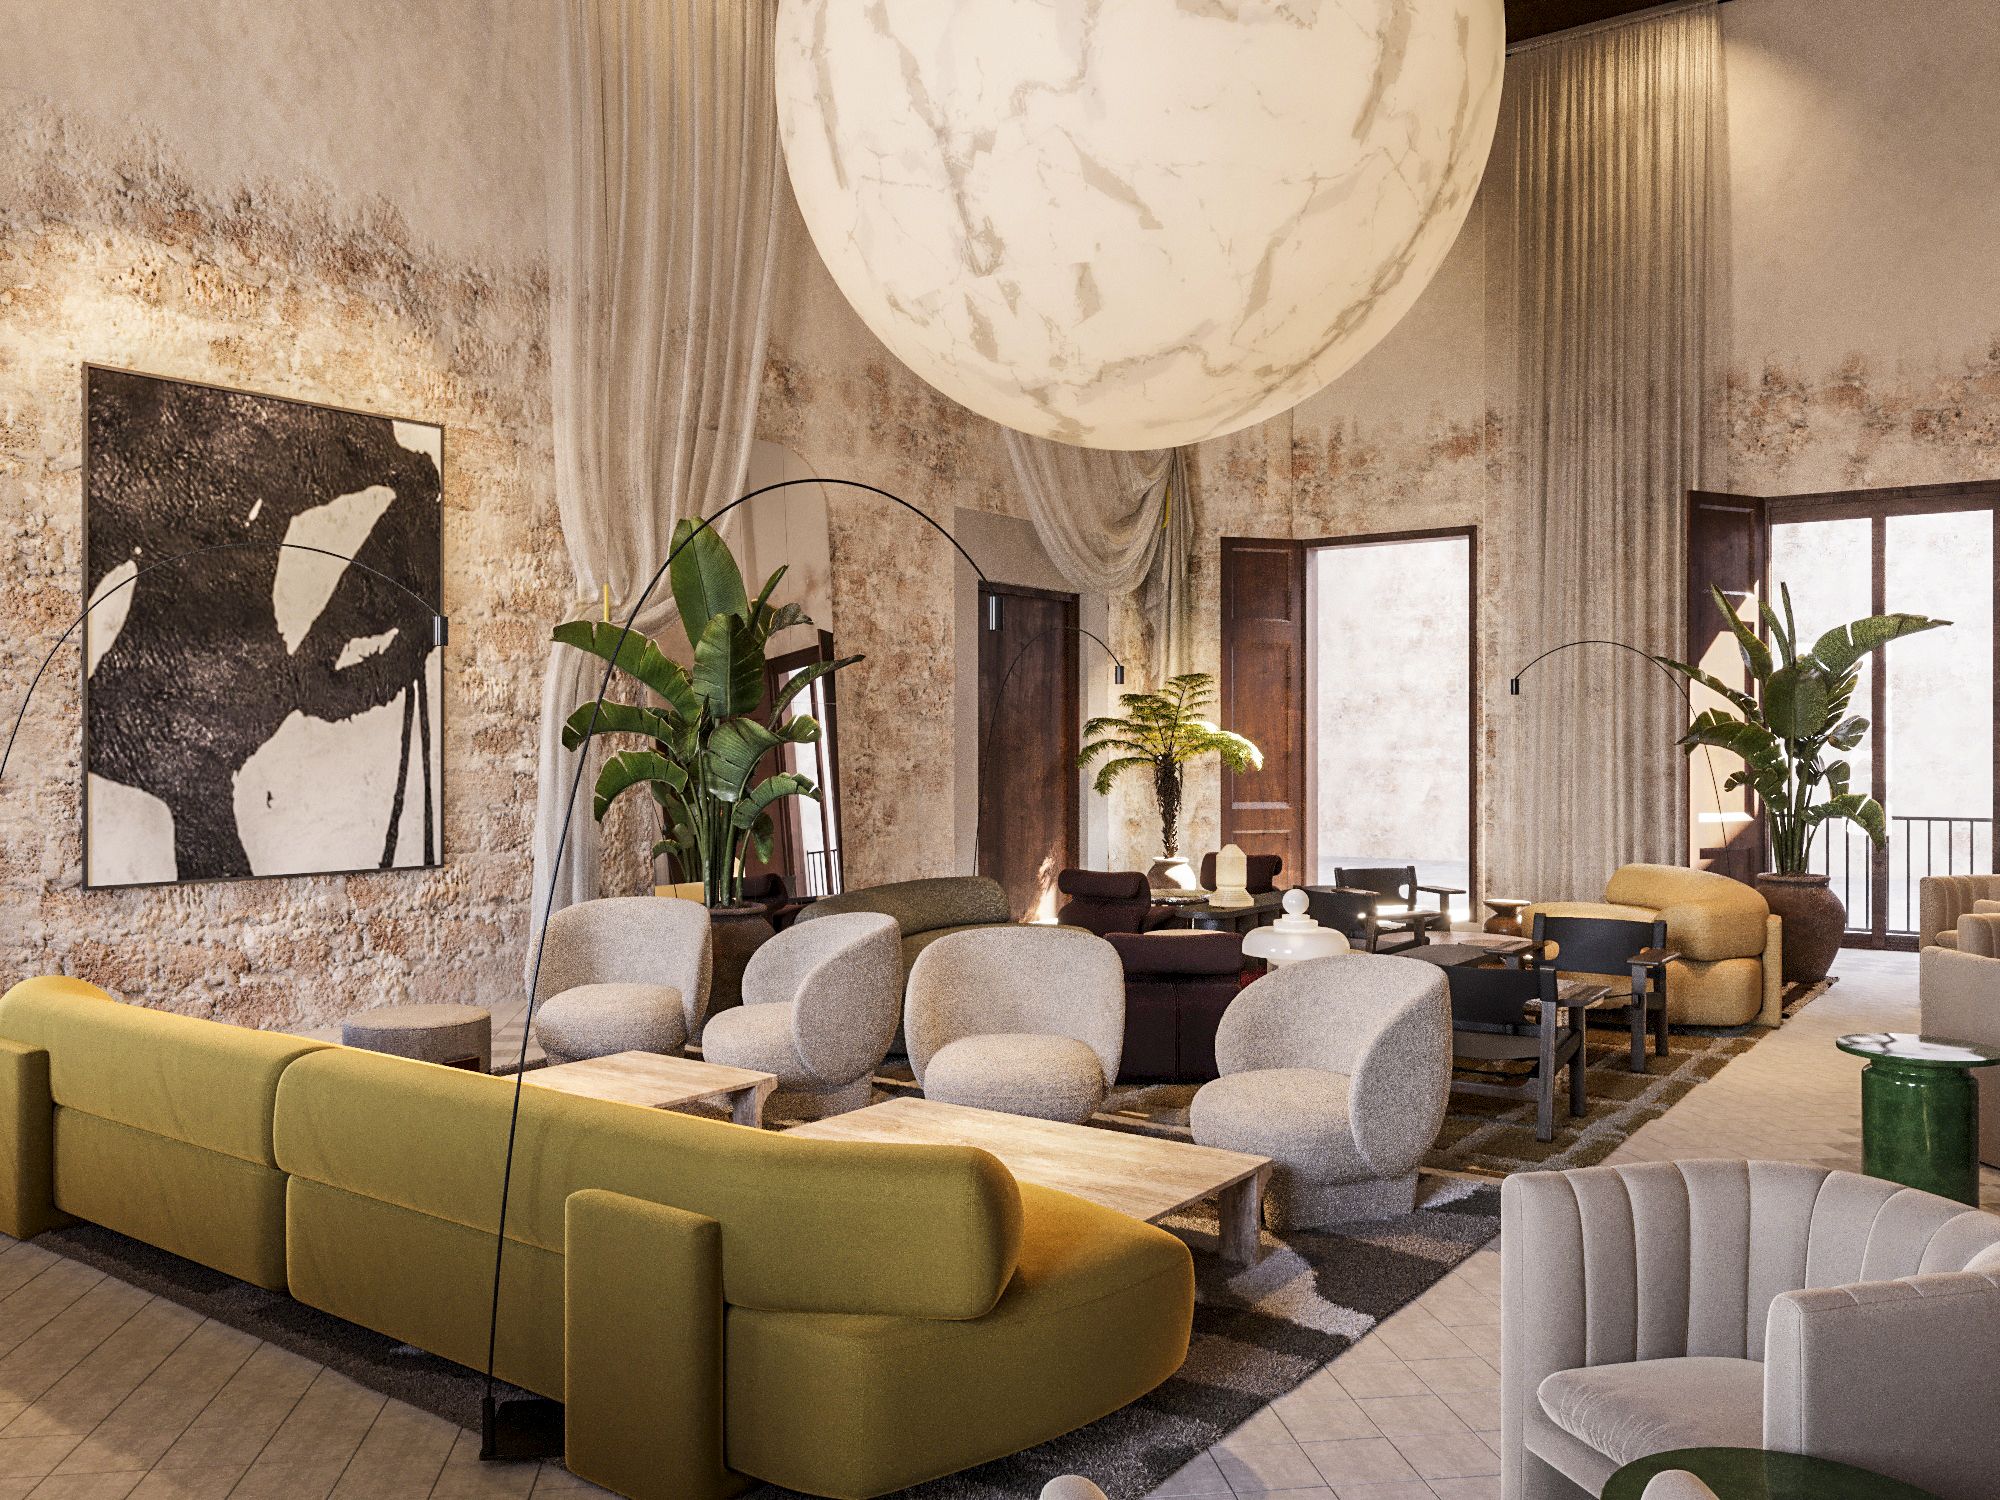 Nobis Hotel Palma, el lujo sueco, abre en agosto